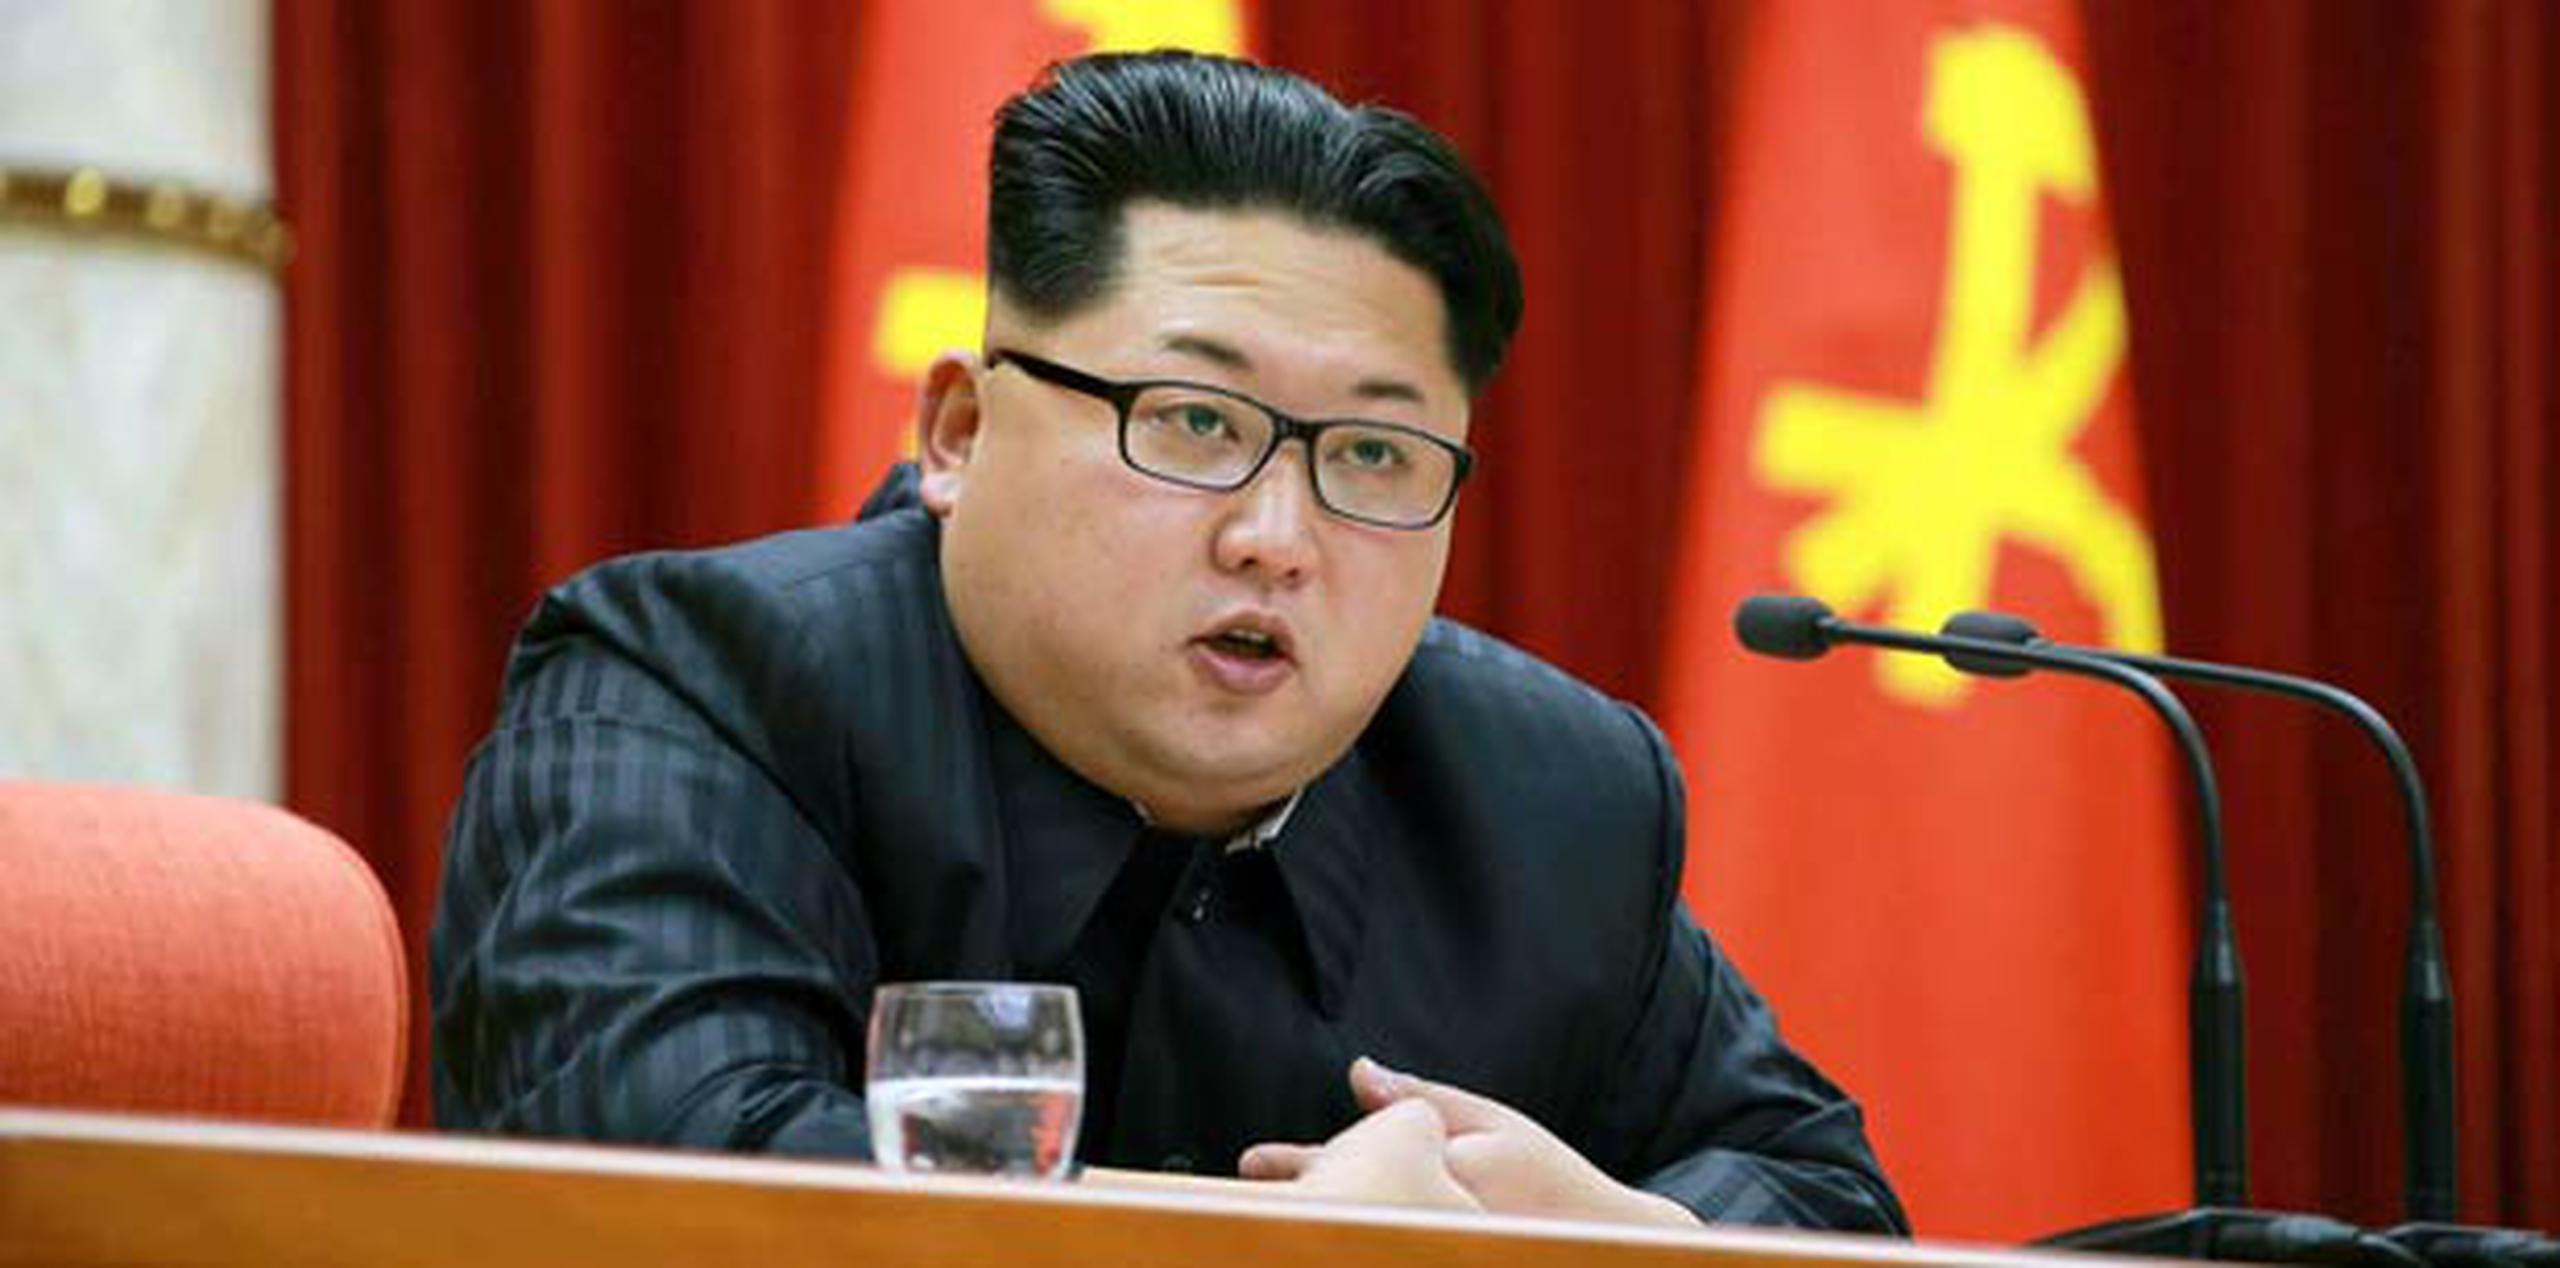 El anuncio del arresto del estudiante tiene lugar en momentos en que Washington, Seúl y otras capitales buscan imponer sanciones más severas a Corea del Norte por haber realizado en fecha reciente una prueba nuclear. (AP)